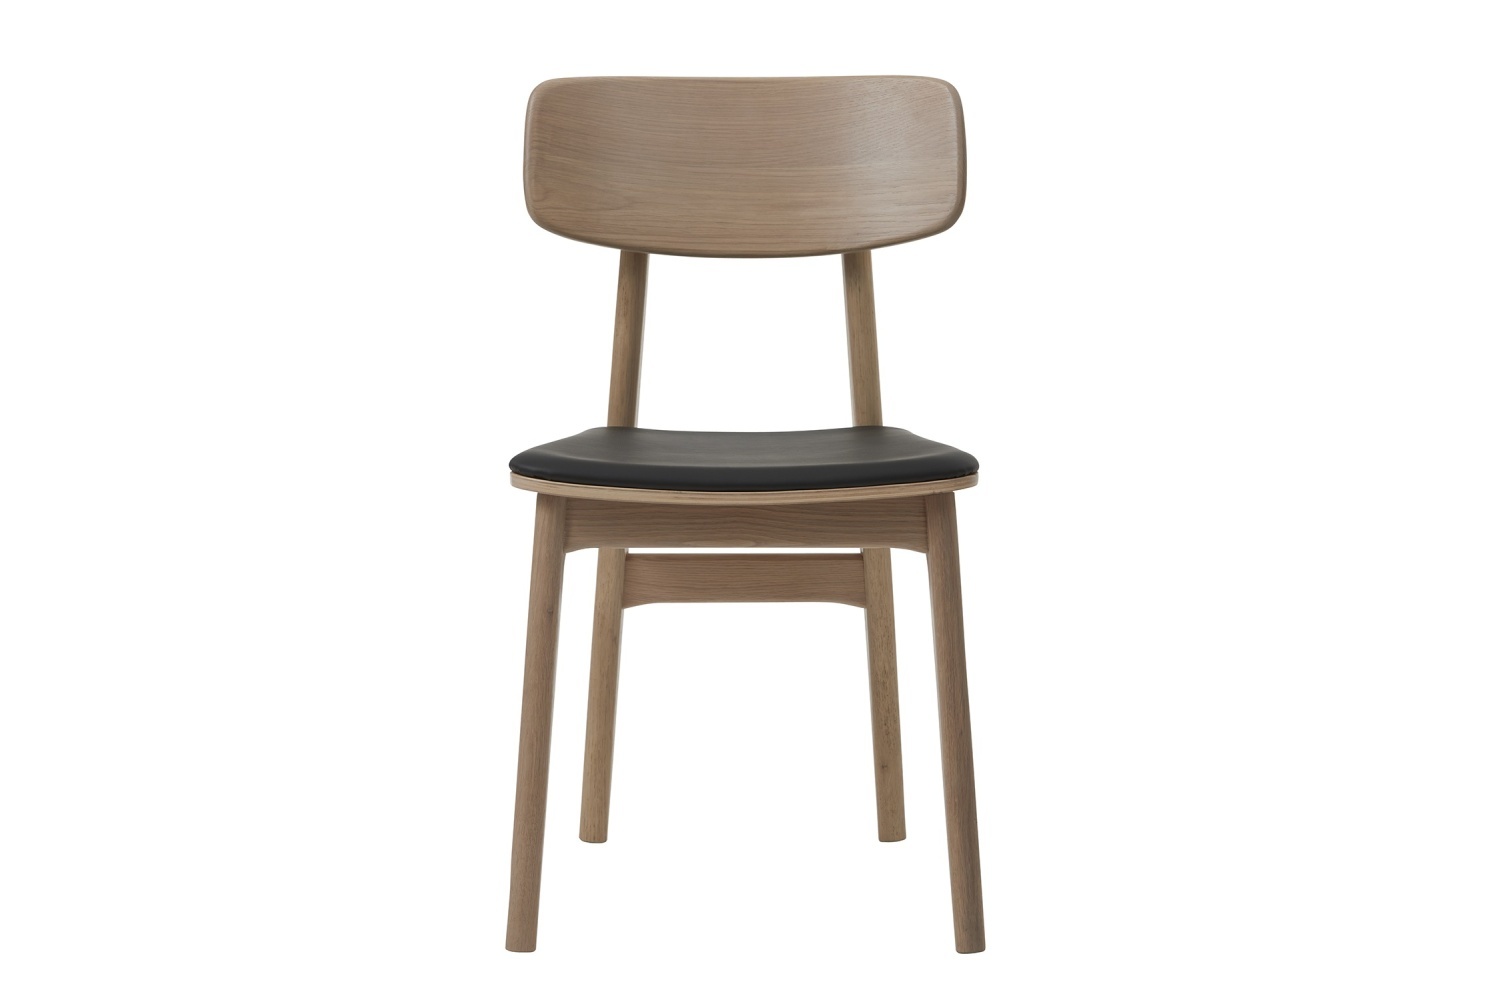 Designová židle Harper přírodní - černá